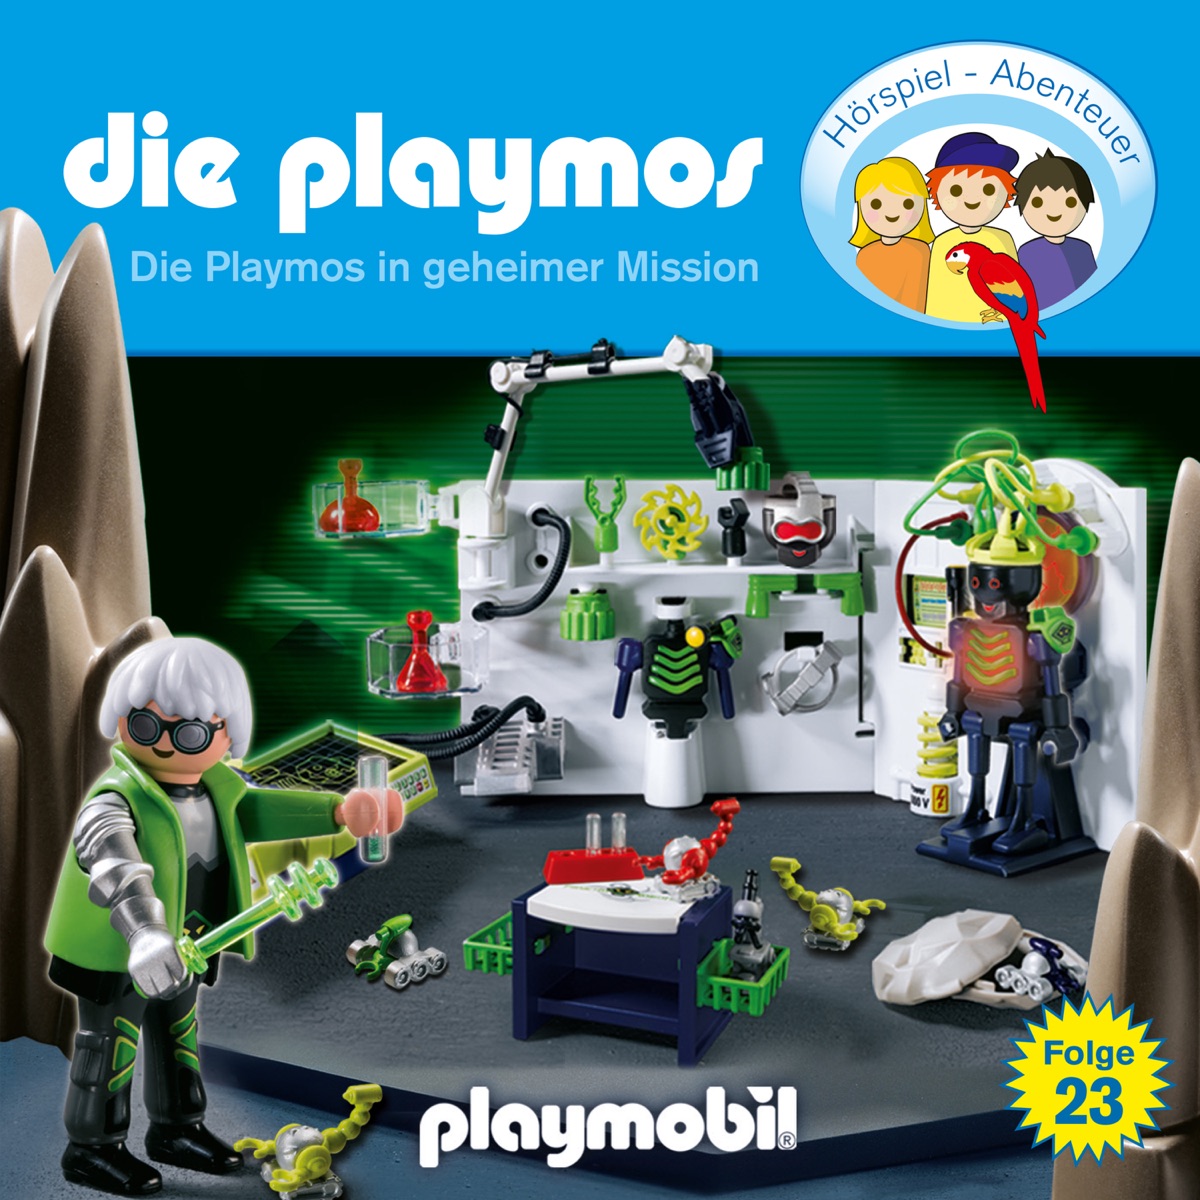 Folge 23: Die Playmos in geheimer Mission (Das Original Playmobil Hörspiel)  - Album by Die Playmos - Apple Music